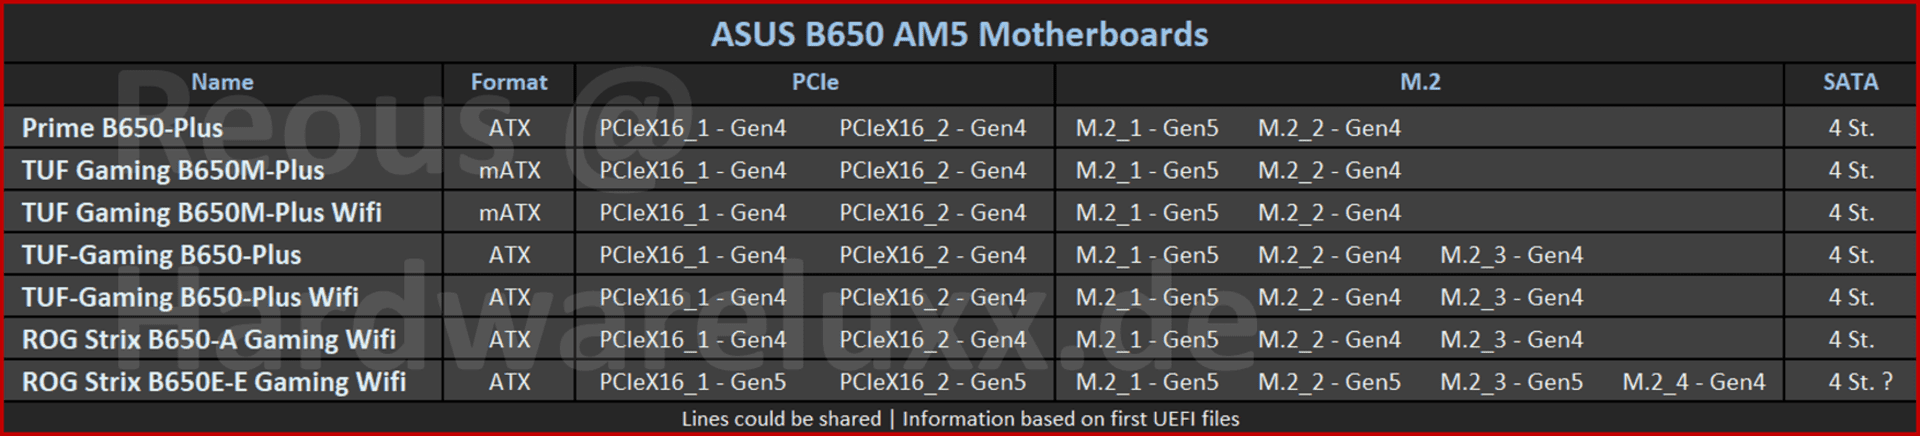 Asus AM5 (X670E/X670/B650) desky - infa, zkušenosti